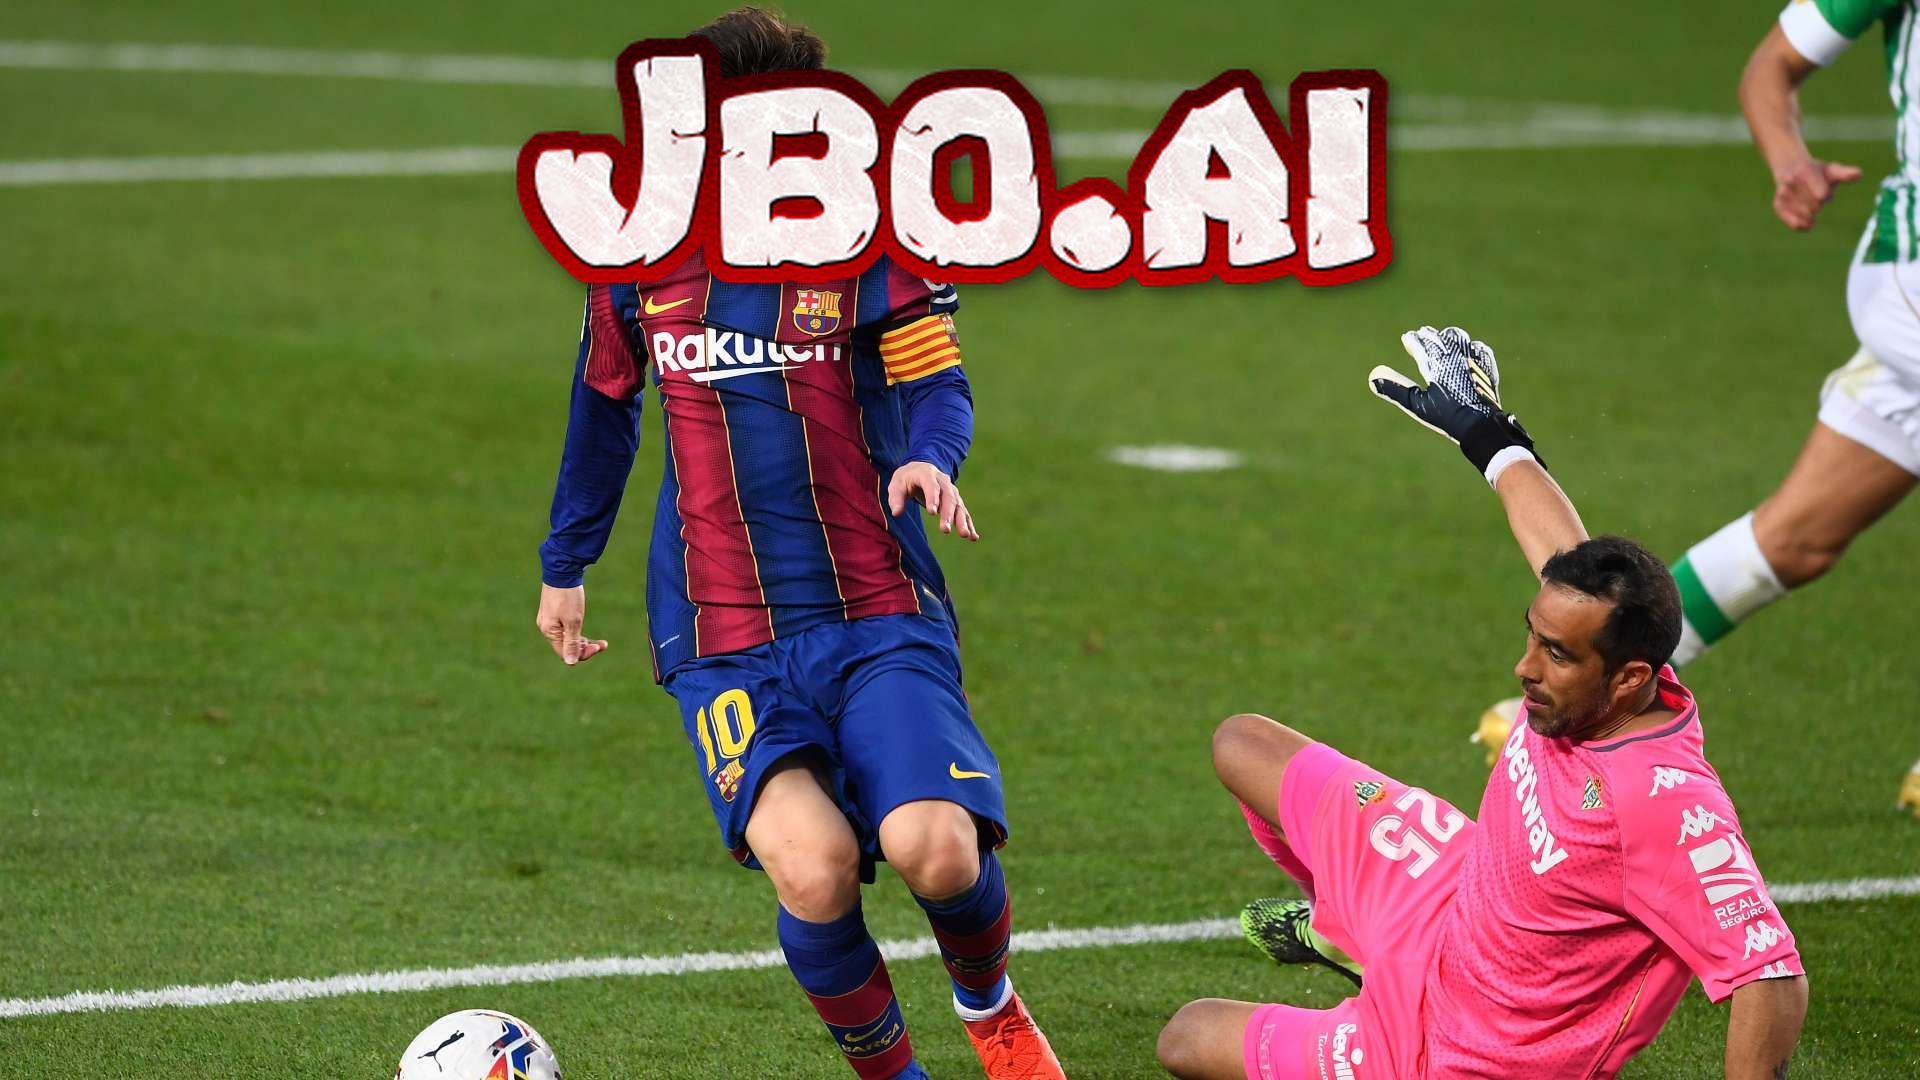 Messi chưa nhận được lời đề nghị nào từ PSG - tin thể thao ngày 28/2 không thể bỏ qua | JBO VietNam